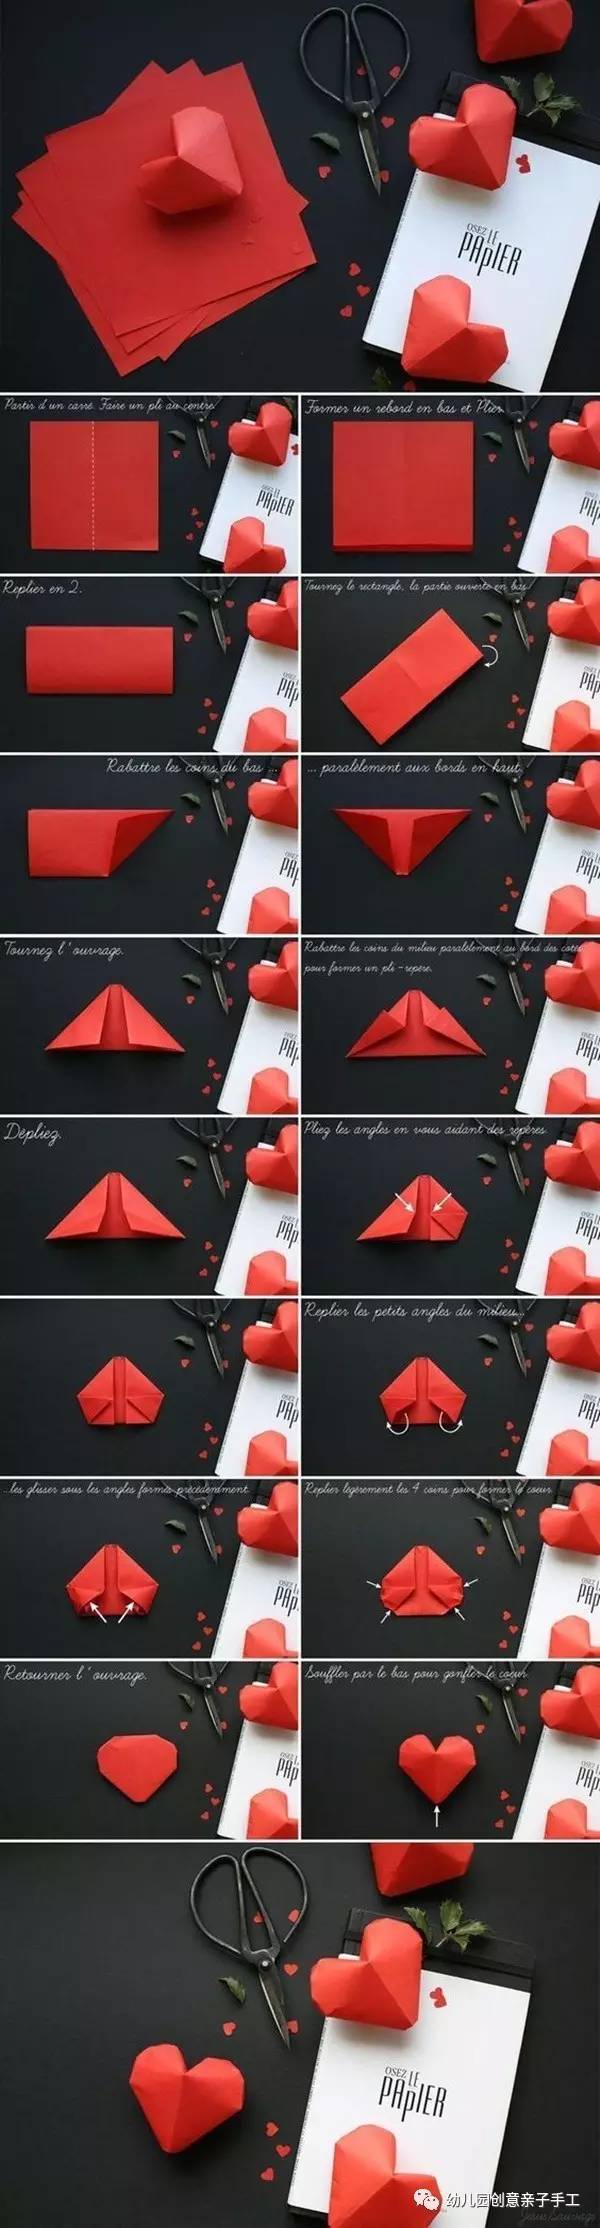 幼儿园亲子手工之情人节爱心折纸大全，经典或创意心形造型纸艺